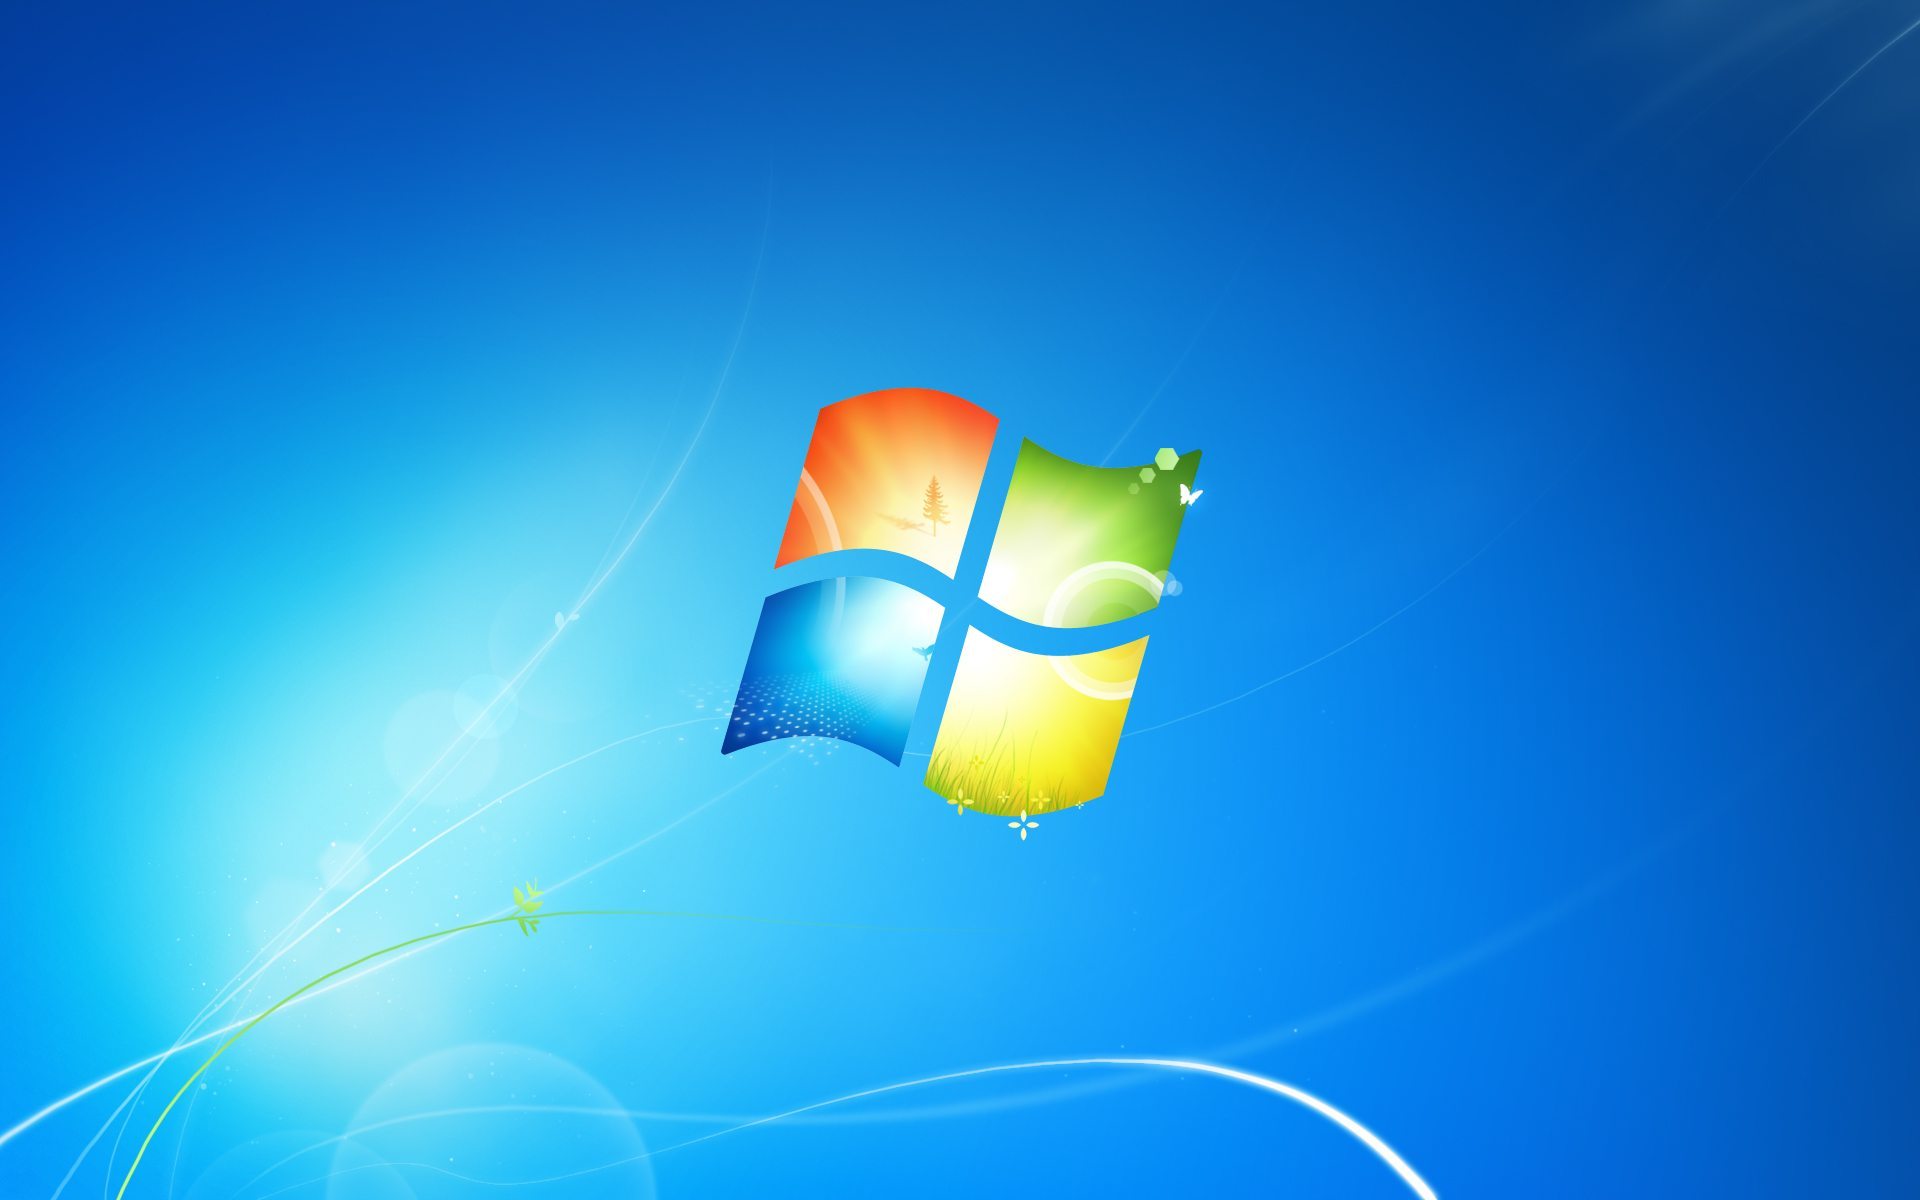 Trang web hỗ trợ Windows đình đám sẽ kết thúc trong vài ngày tới, đặc biệt là hỗ trợ Windows 7 và